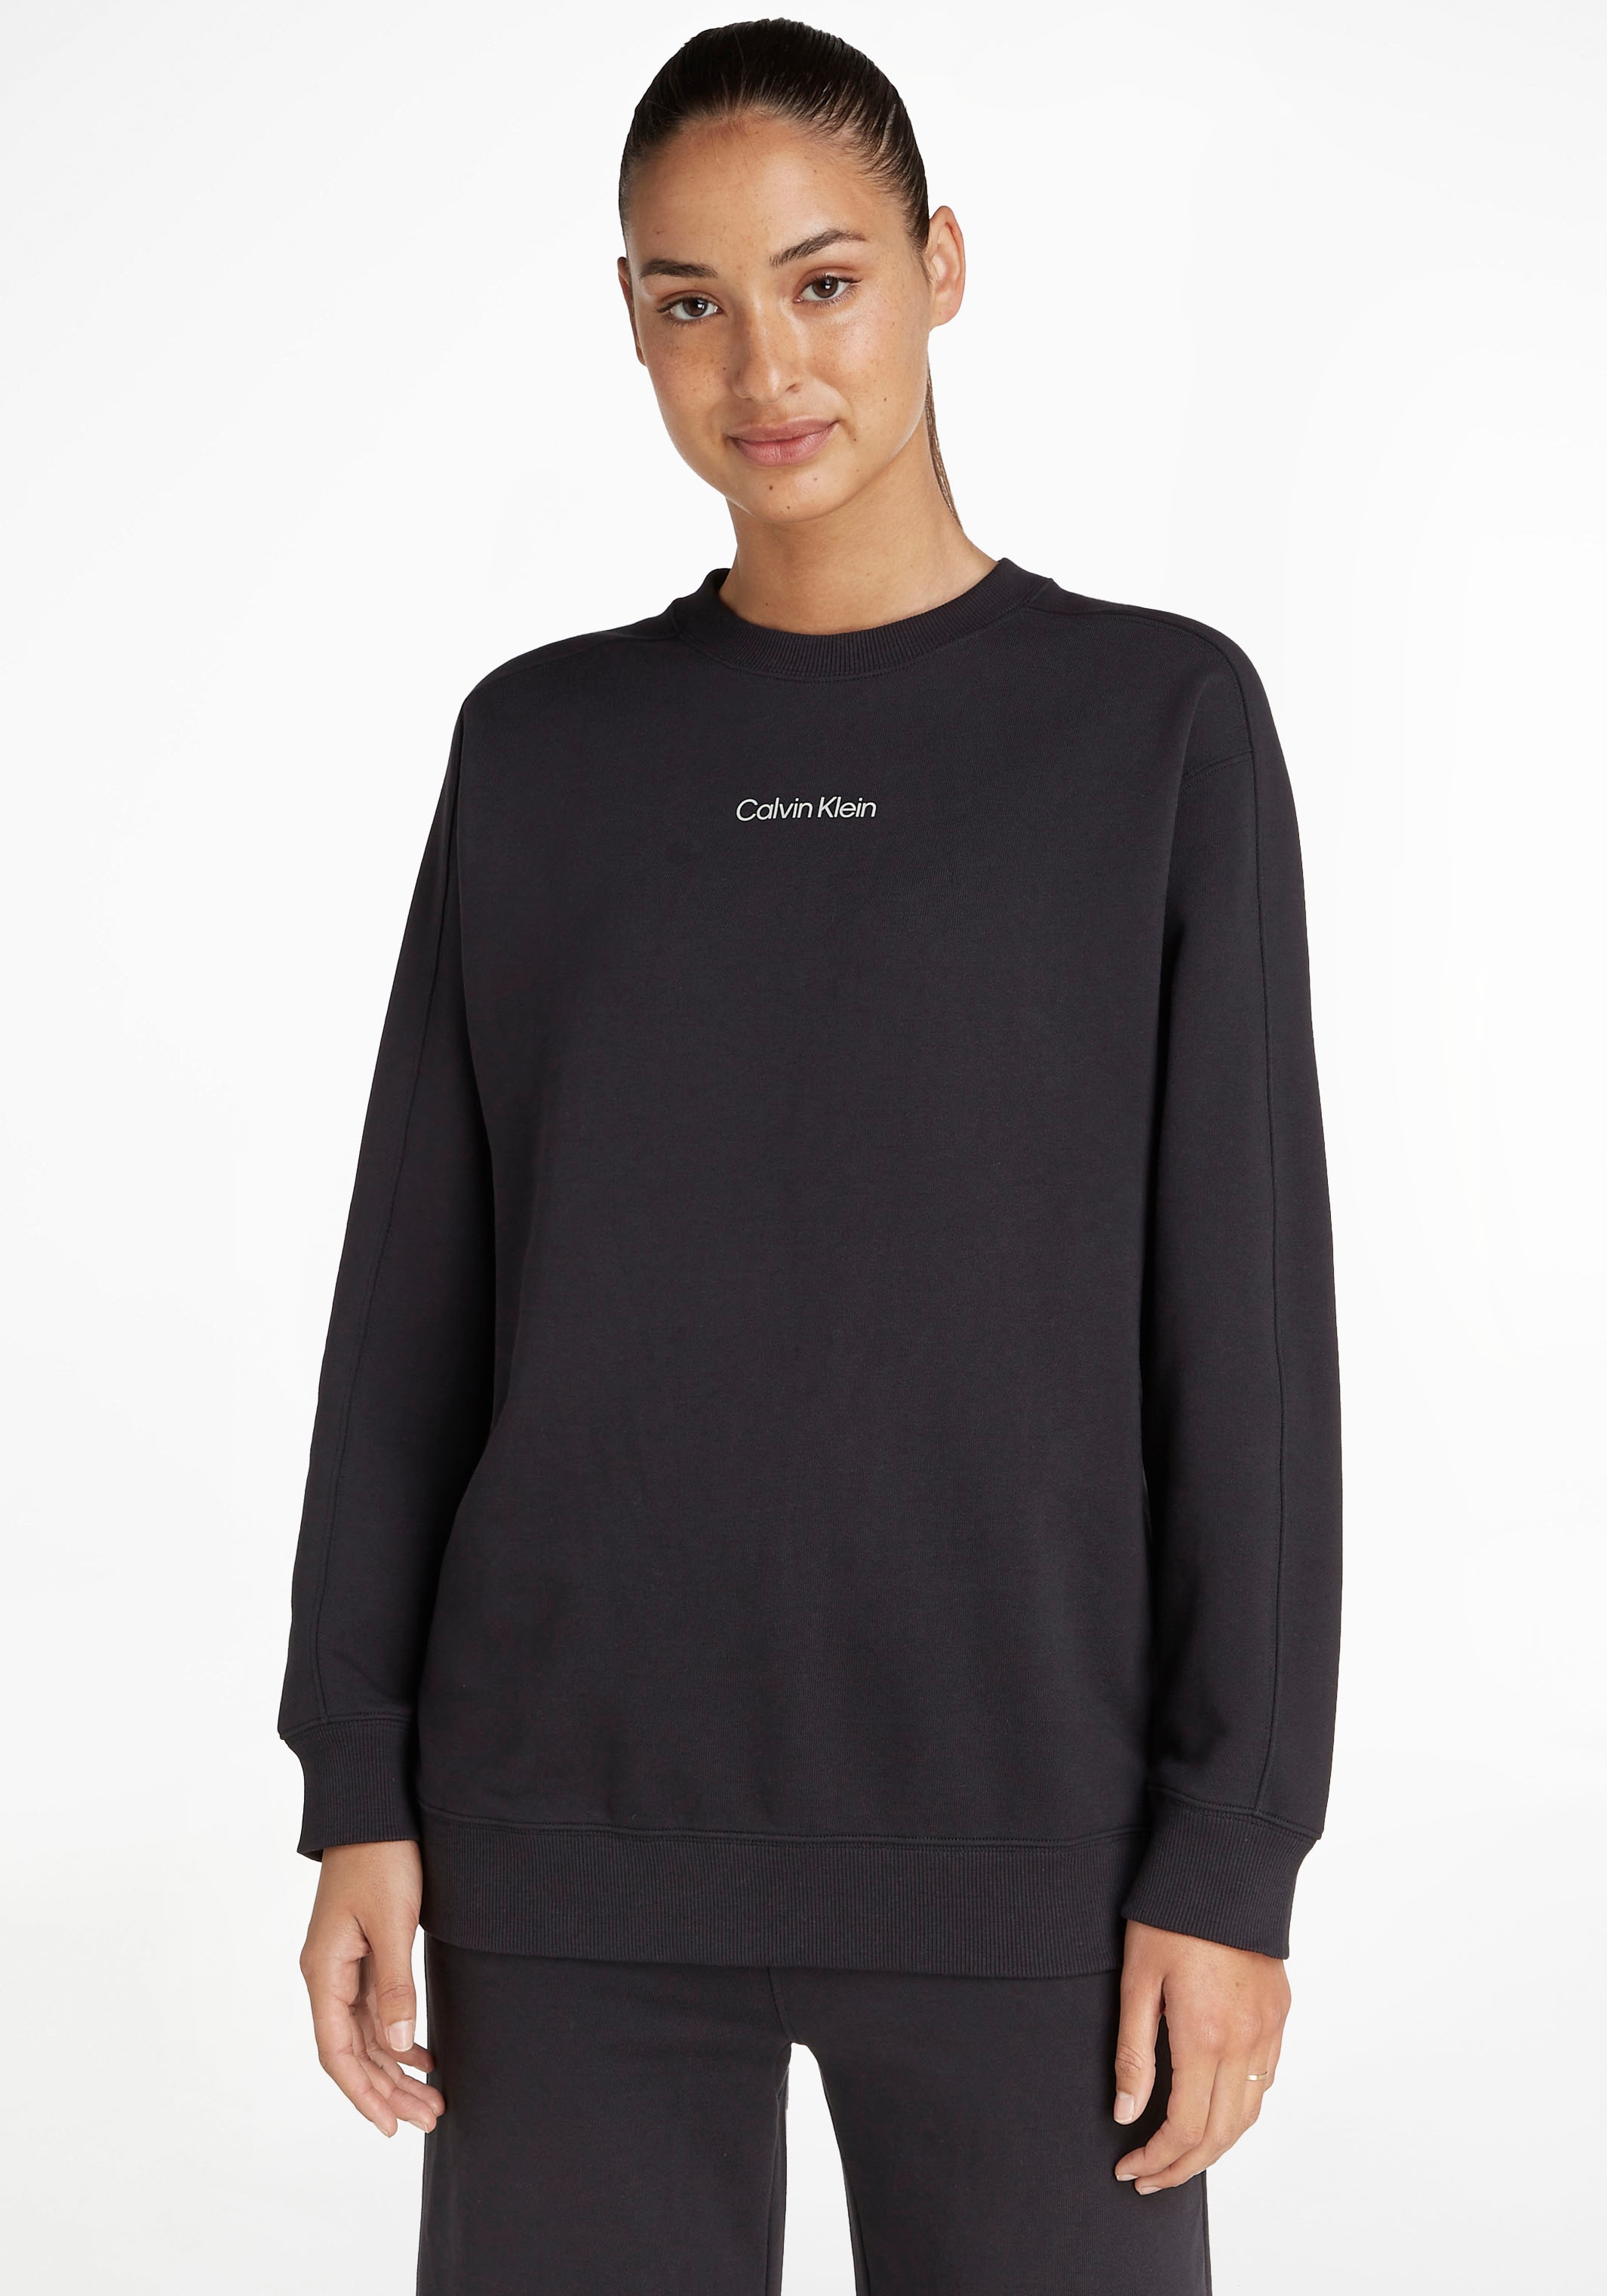 Calvin Klein bei Sweatshirt Sport